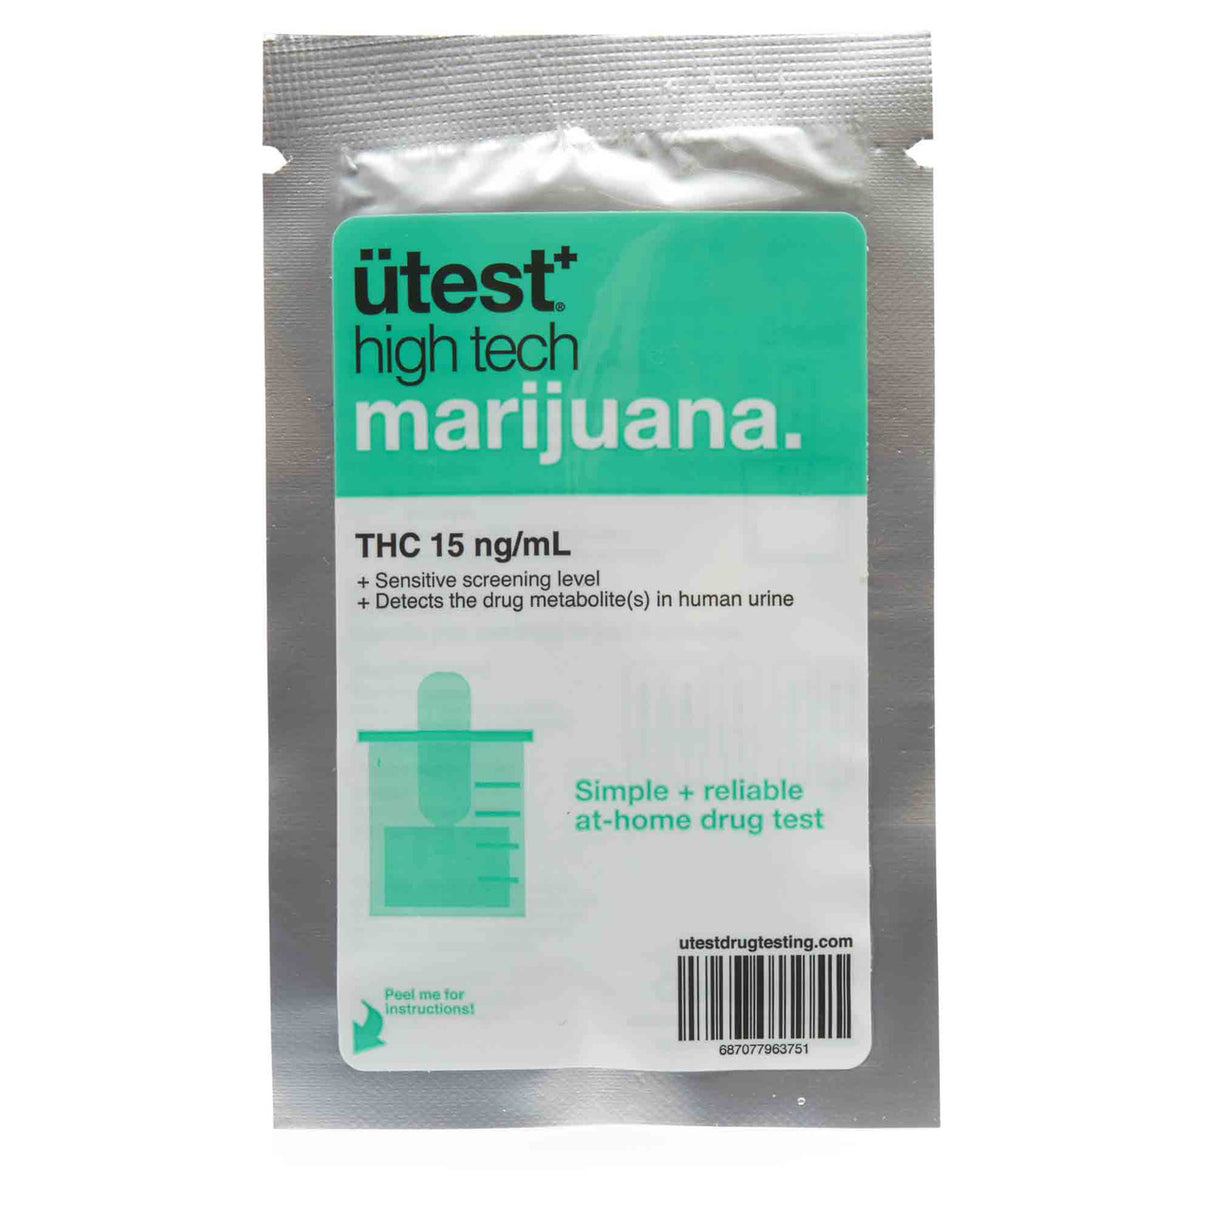 UTest 1 Panel at Home Marijuana Drug Test